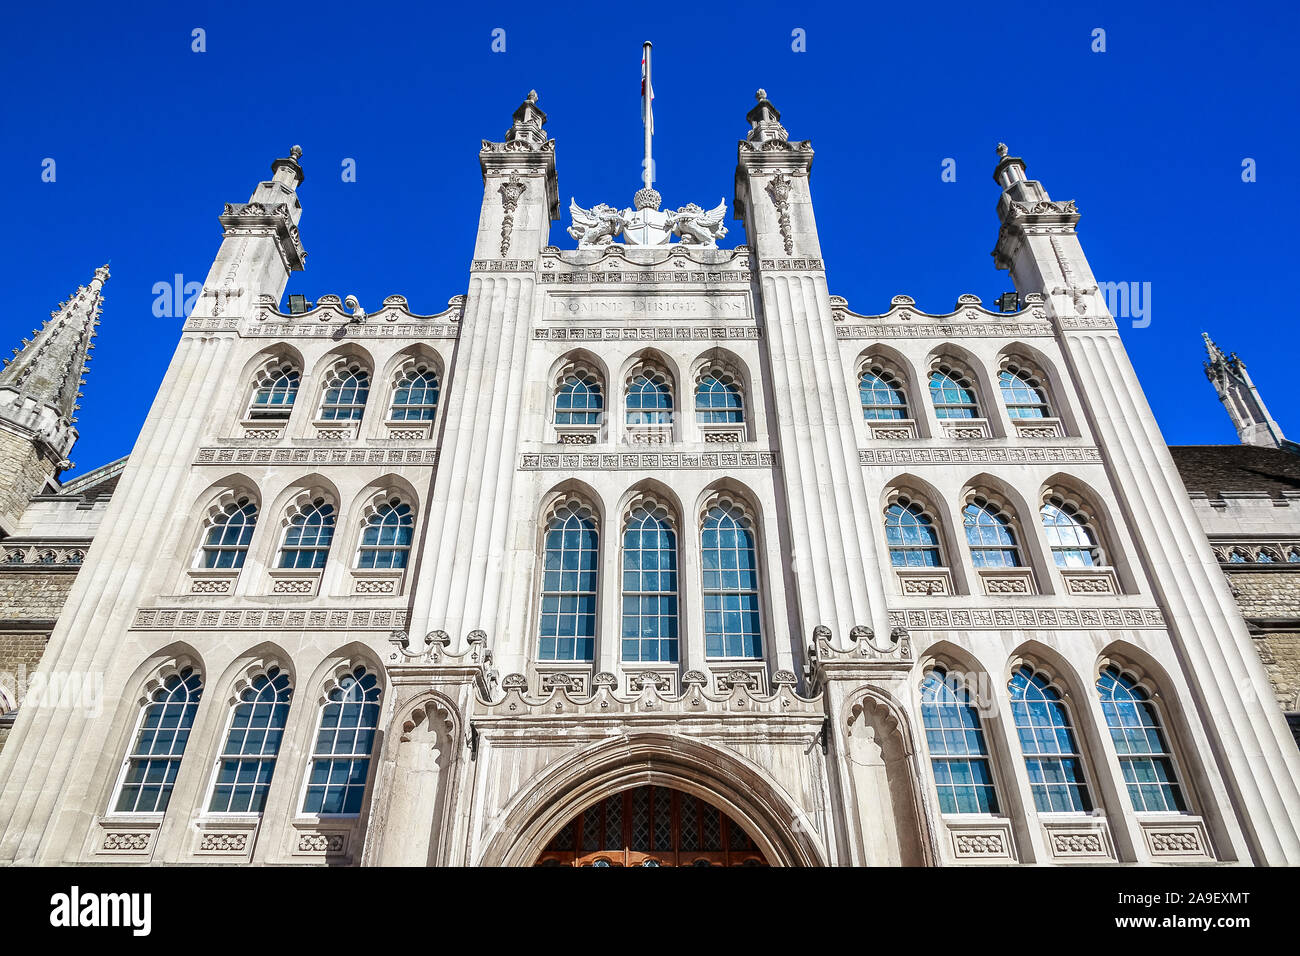 Fassade der Guildhall in London, England gegen einen wolkenlosen Himmel Stockfoto